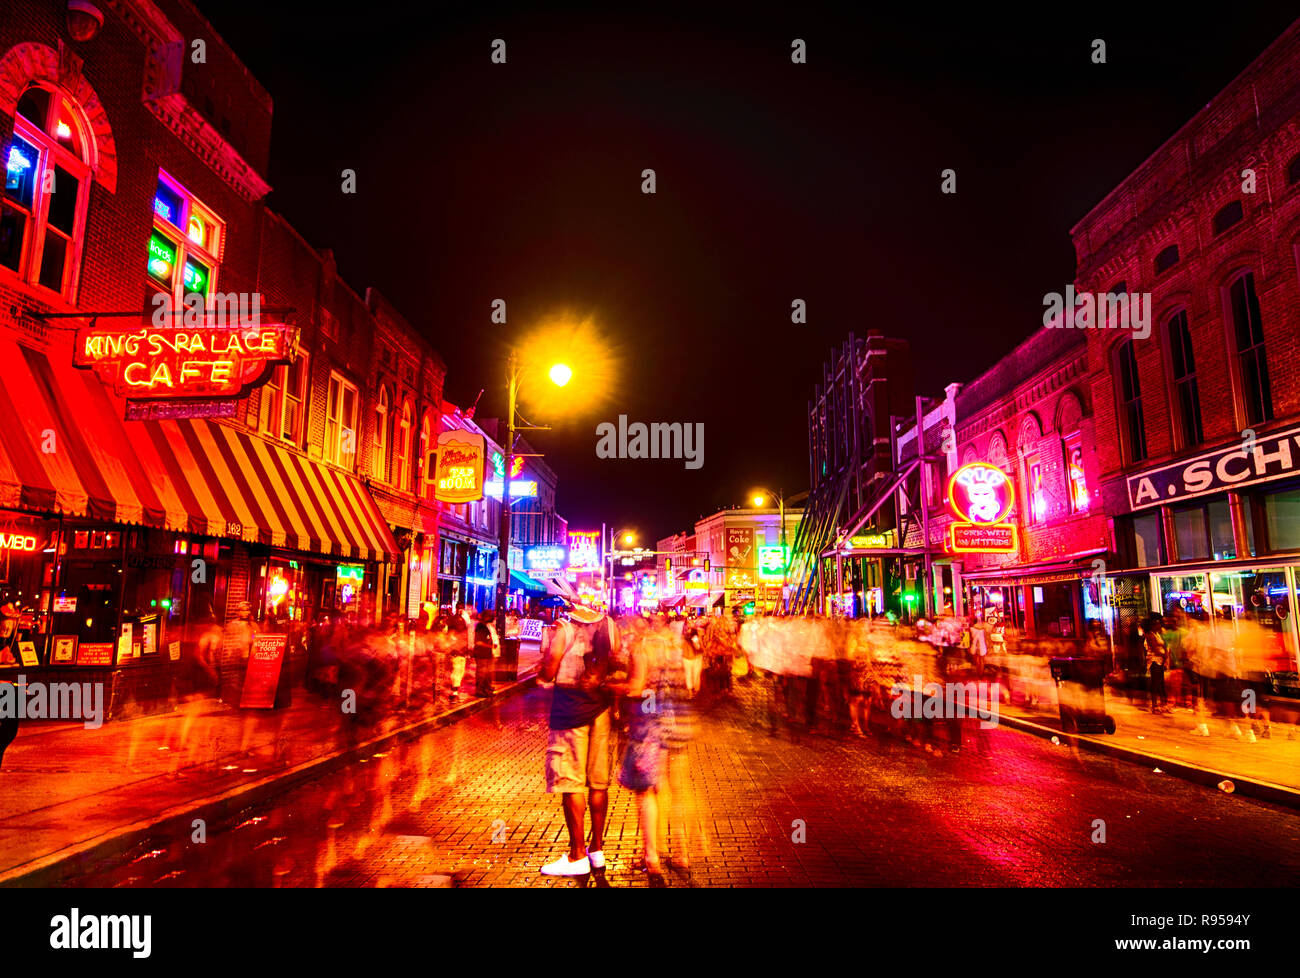 Néons éclairent Beale Street, le 5 septembre 2015, à Memphis, Tennessee. La rue dispose d''1,8 km de restaurants, discothèques, bars et de blues. Banque D'Images